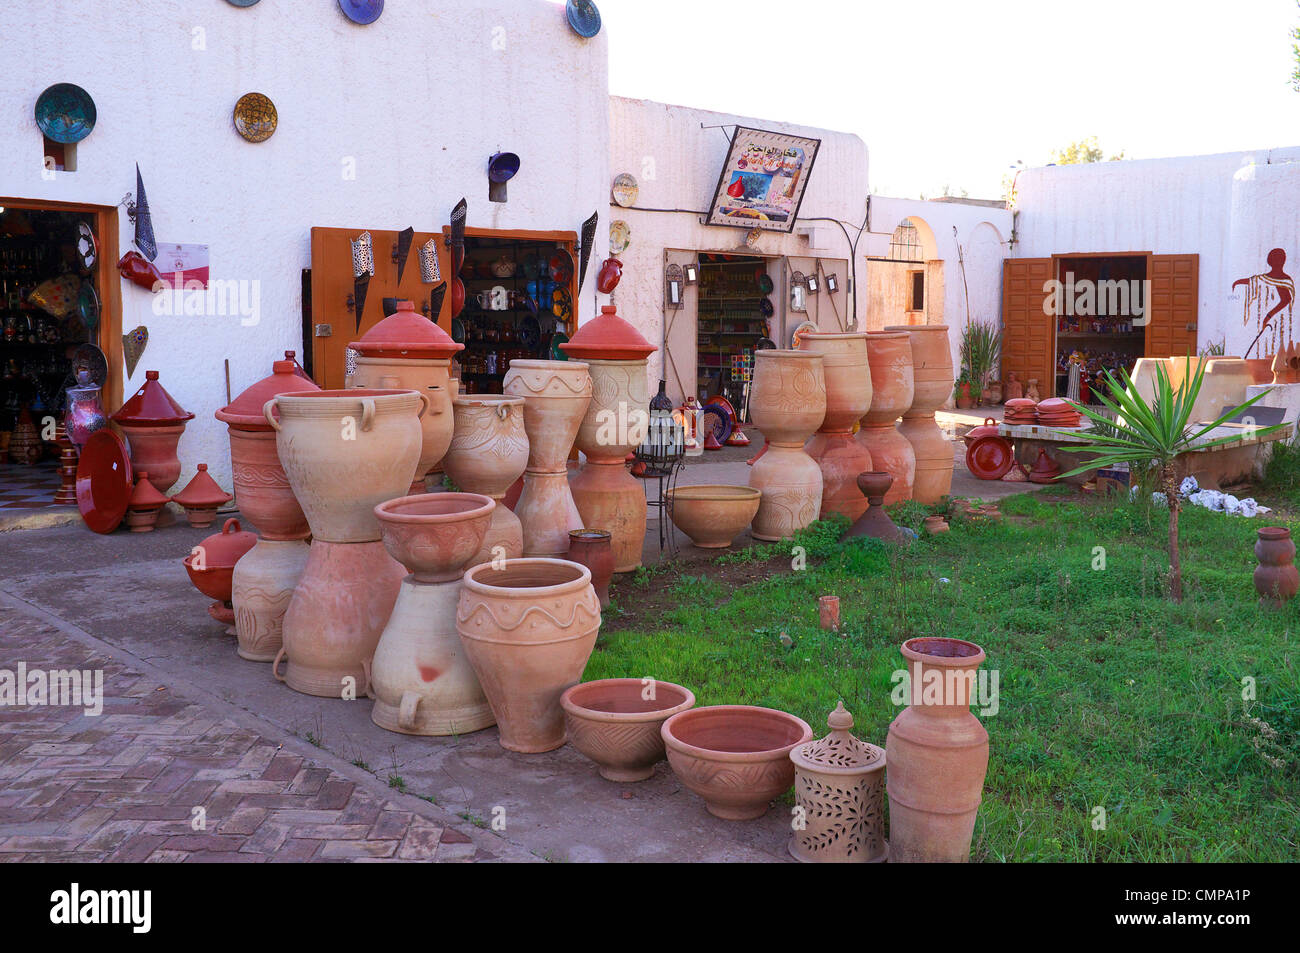 Rabat eines der Geschäfte im Handwerk Dorf, Marokko, Afrika Stockfoto